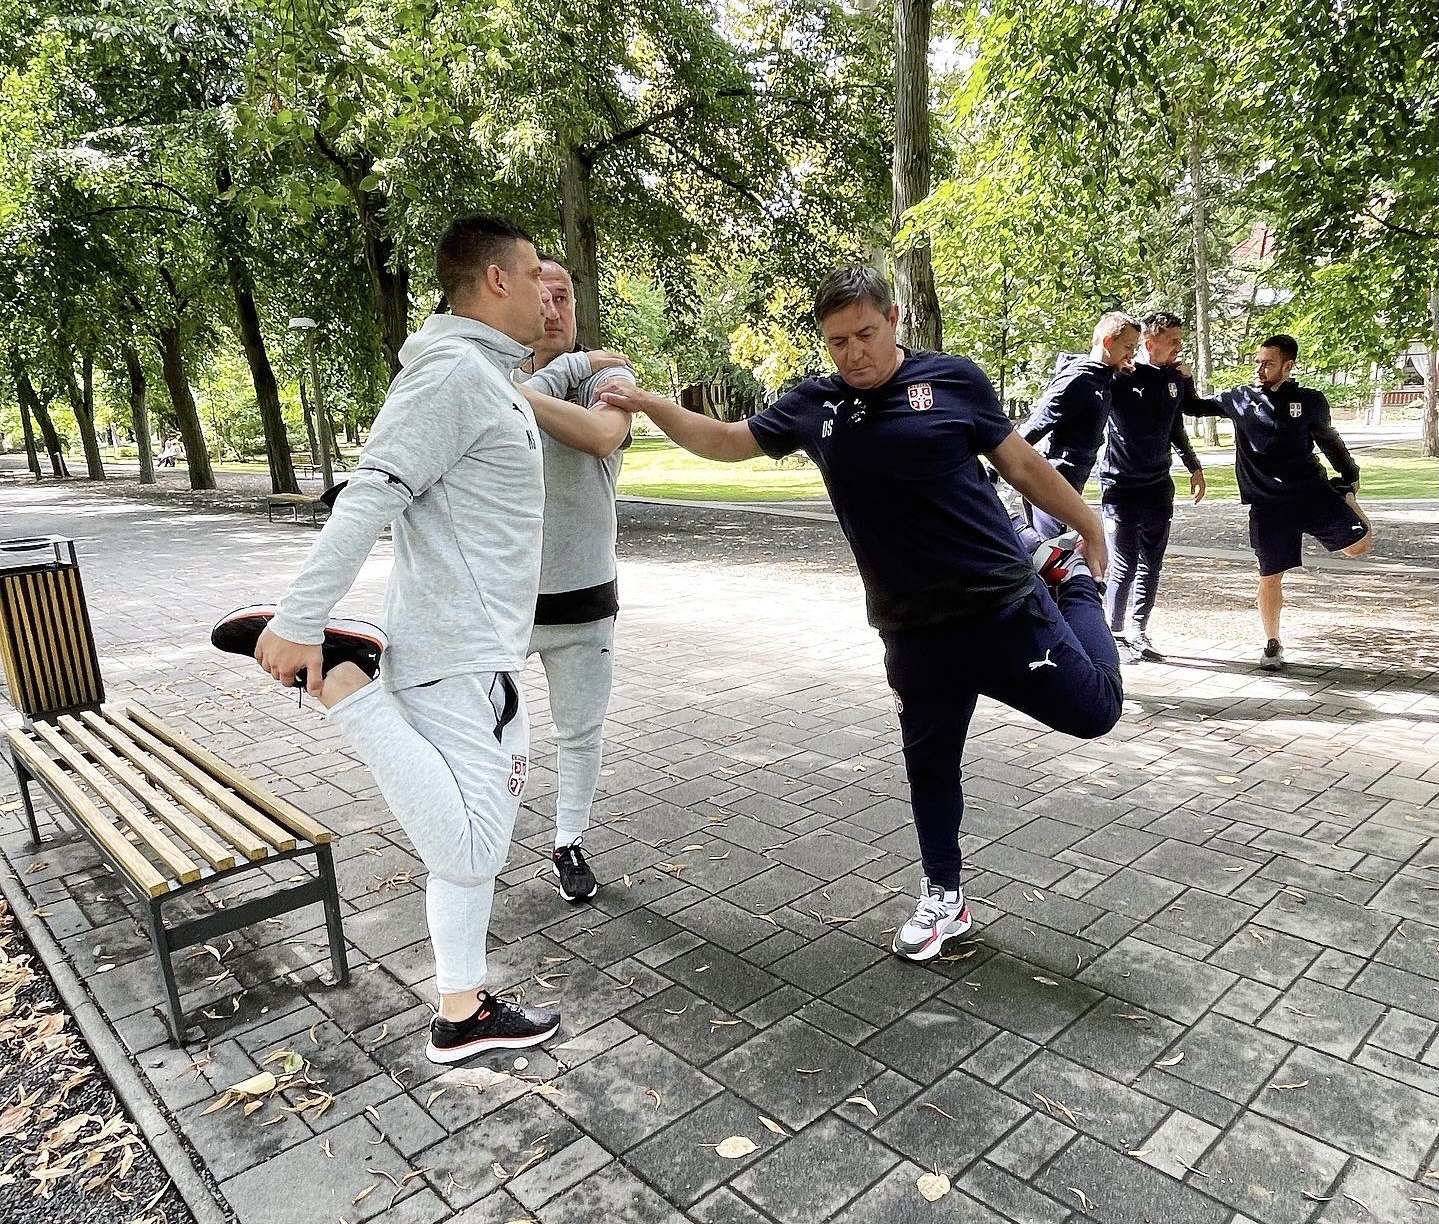  Fudbaleri Srbije i selektor vežbali u parku u Debrecinu 